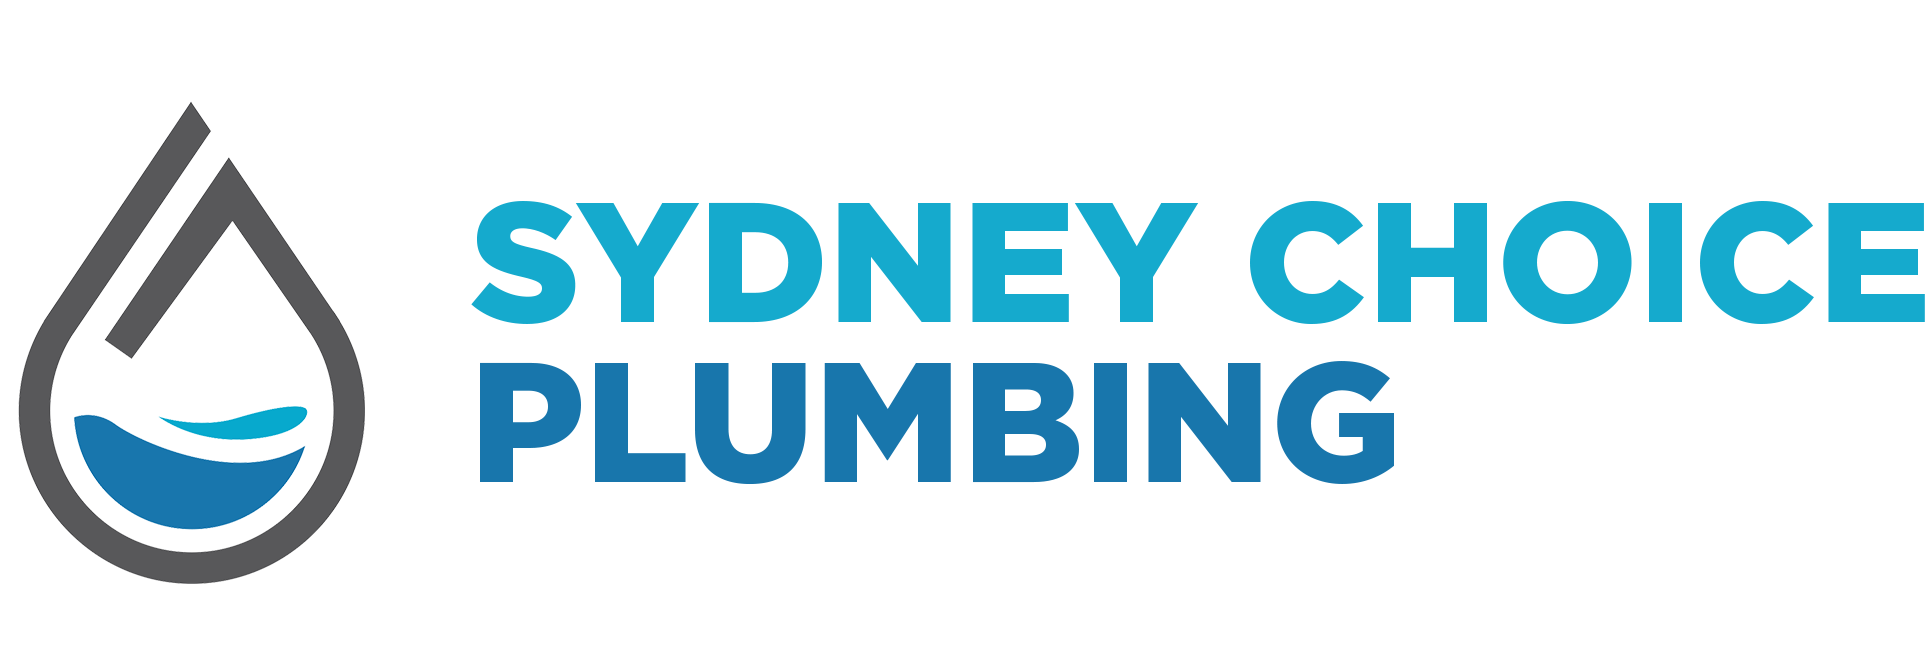 Sydney Choice Plumbing